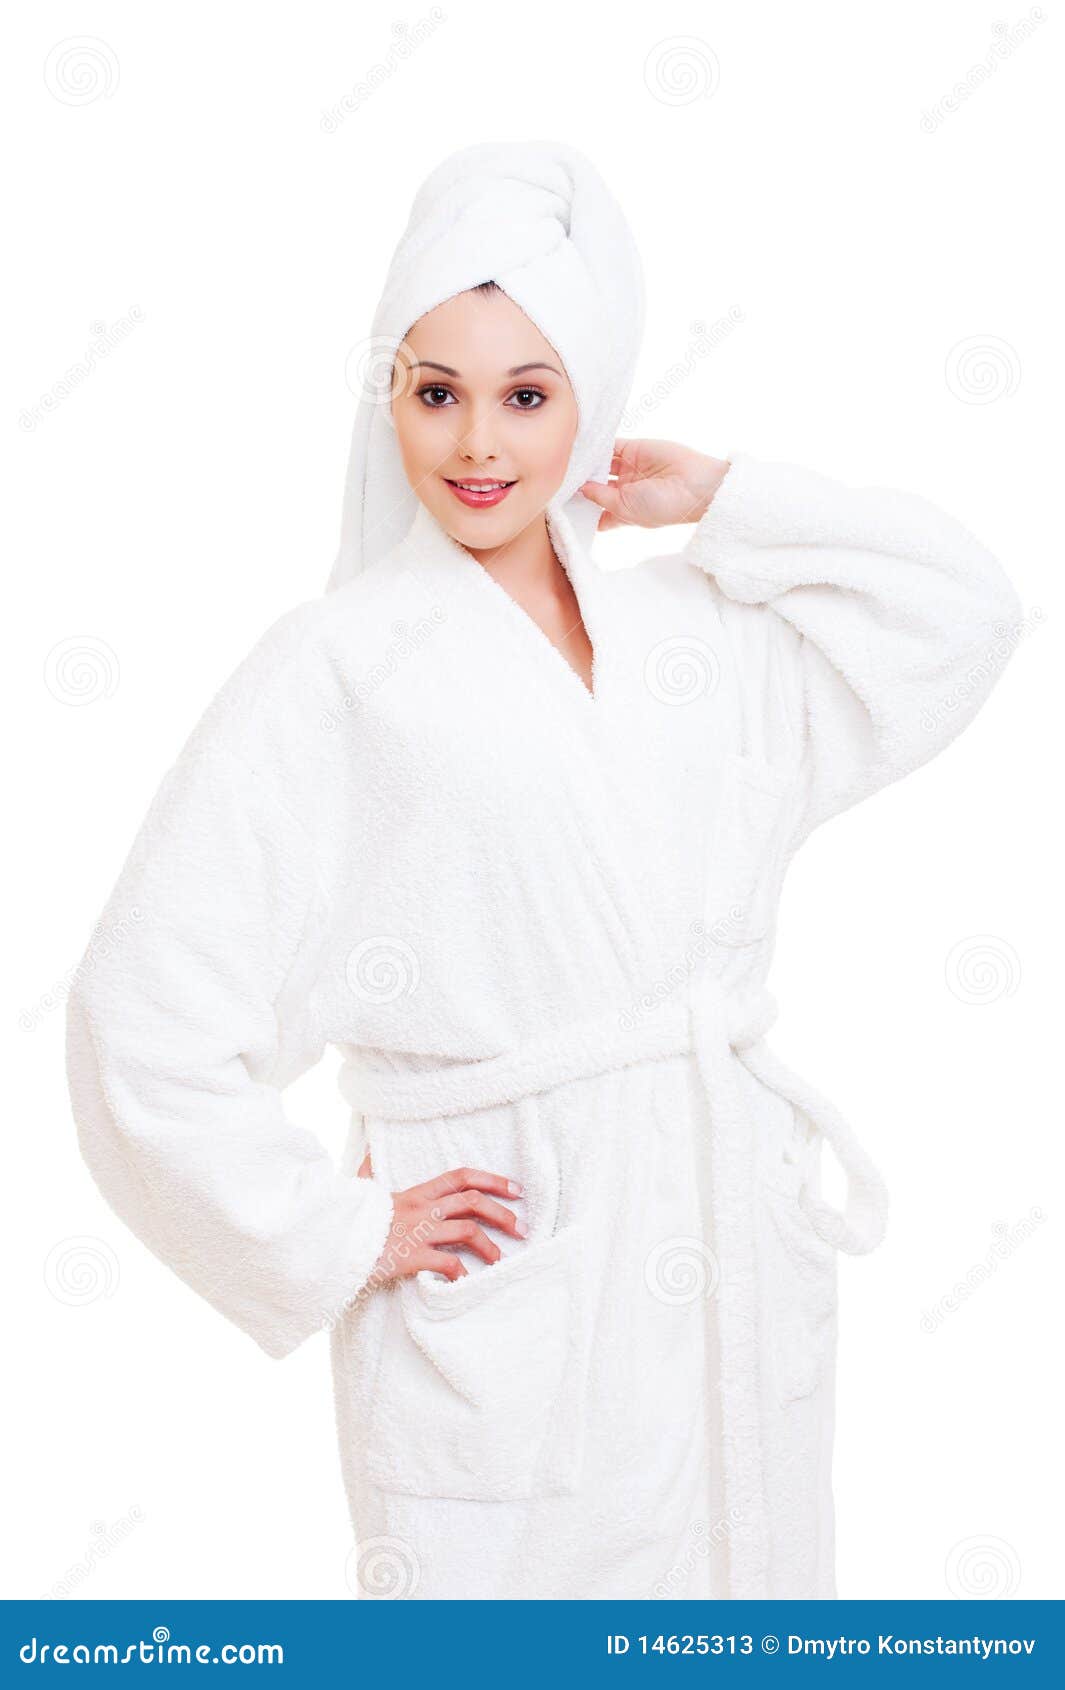 Mujer En La Toalla Y La Blancas Imagen archivo - Imagen de skincare, 14625313